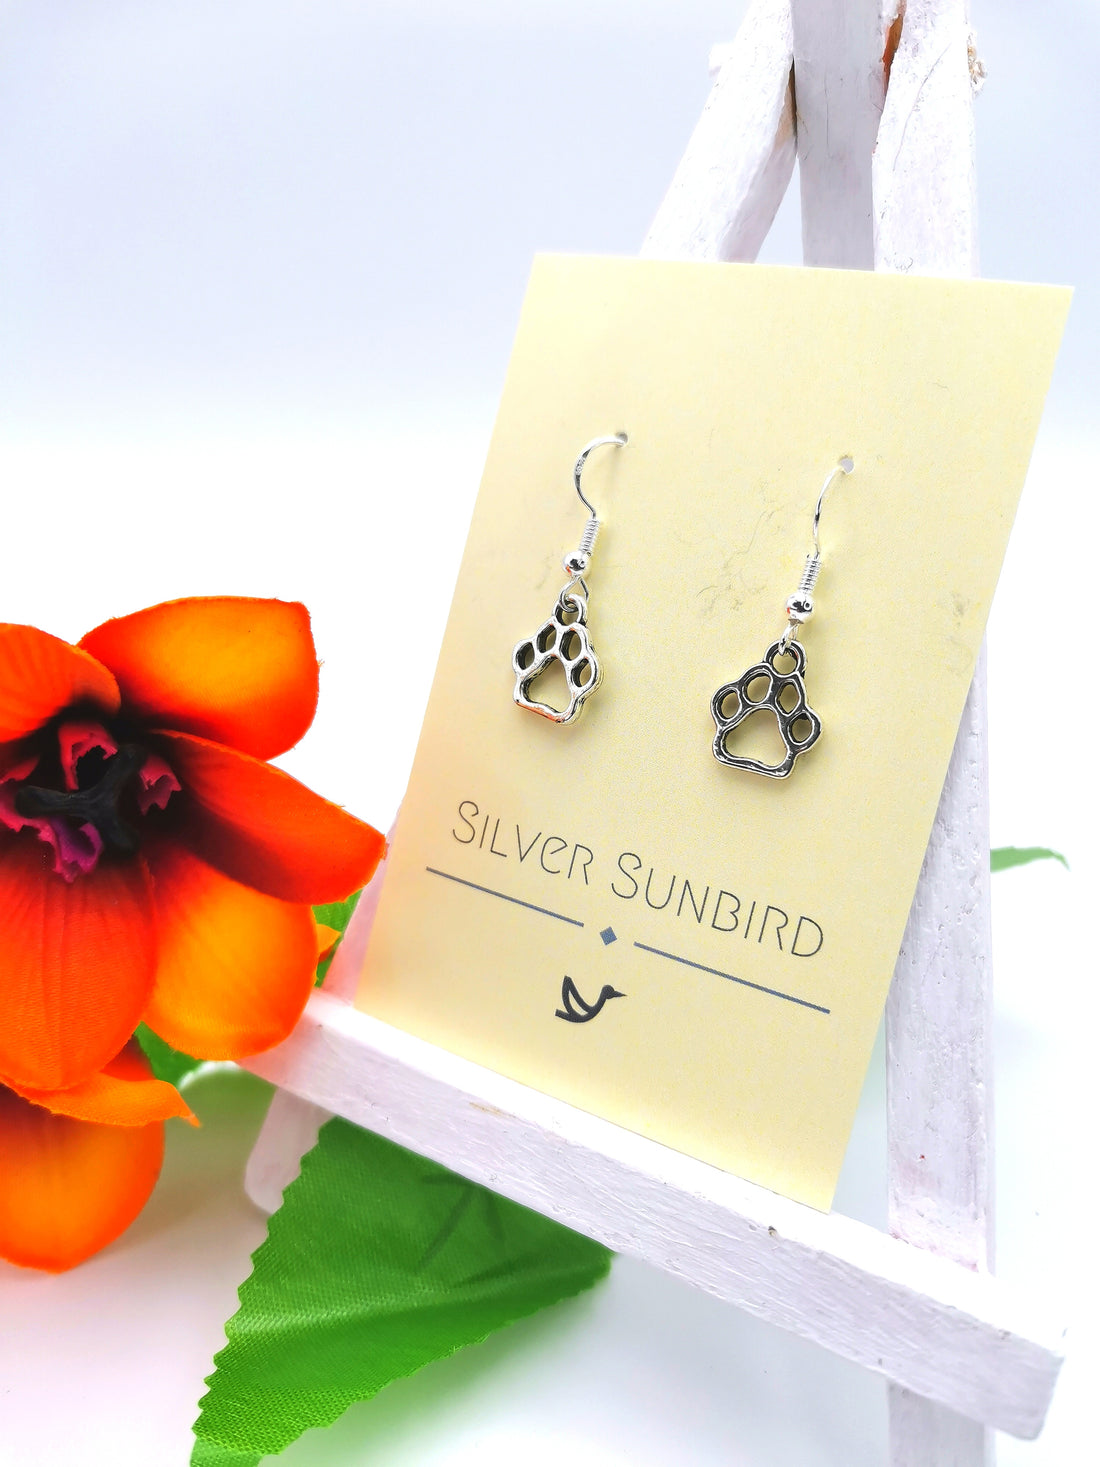 Faithful Friend Paw Print Earrings - Silver Sunbird animal earrings